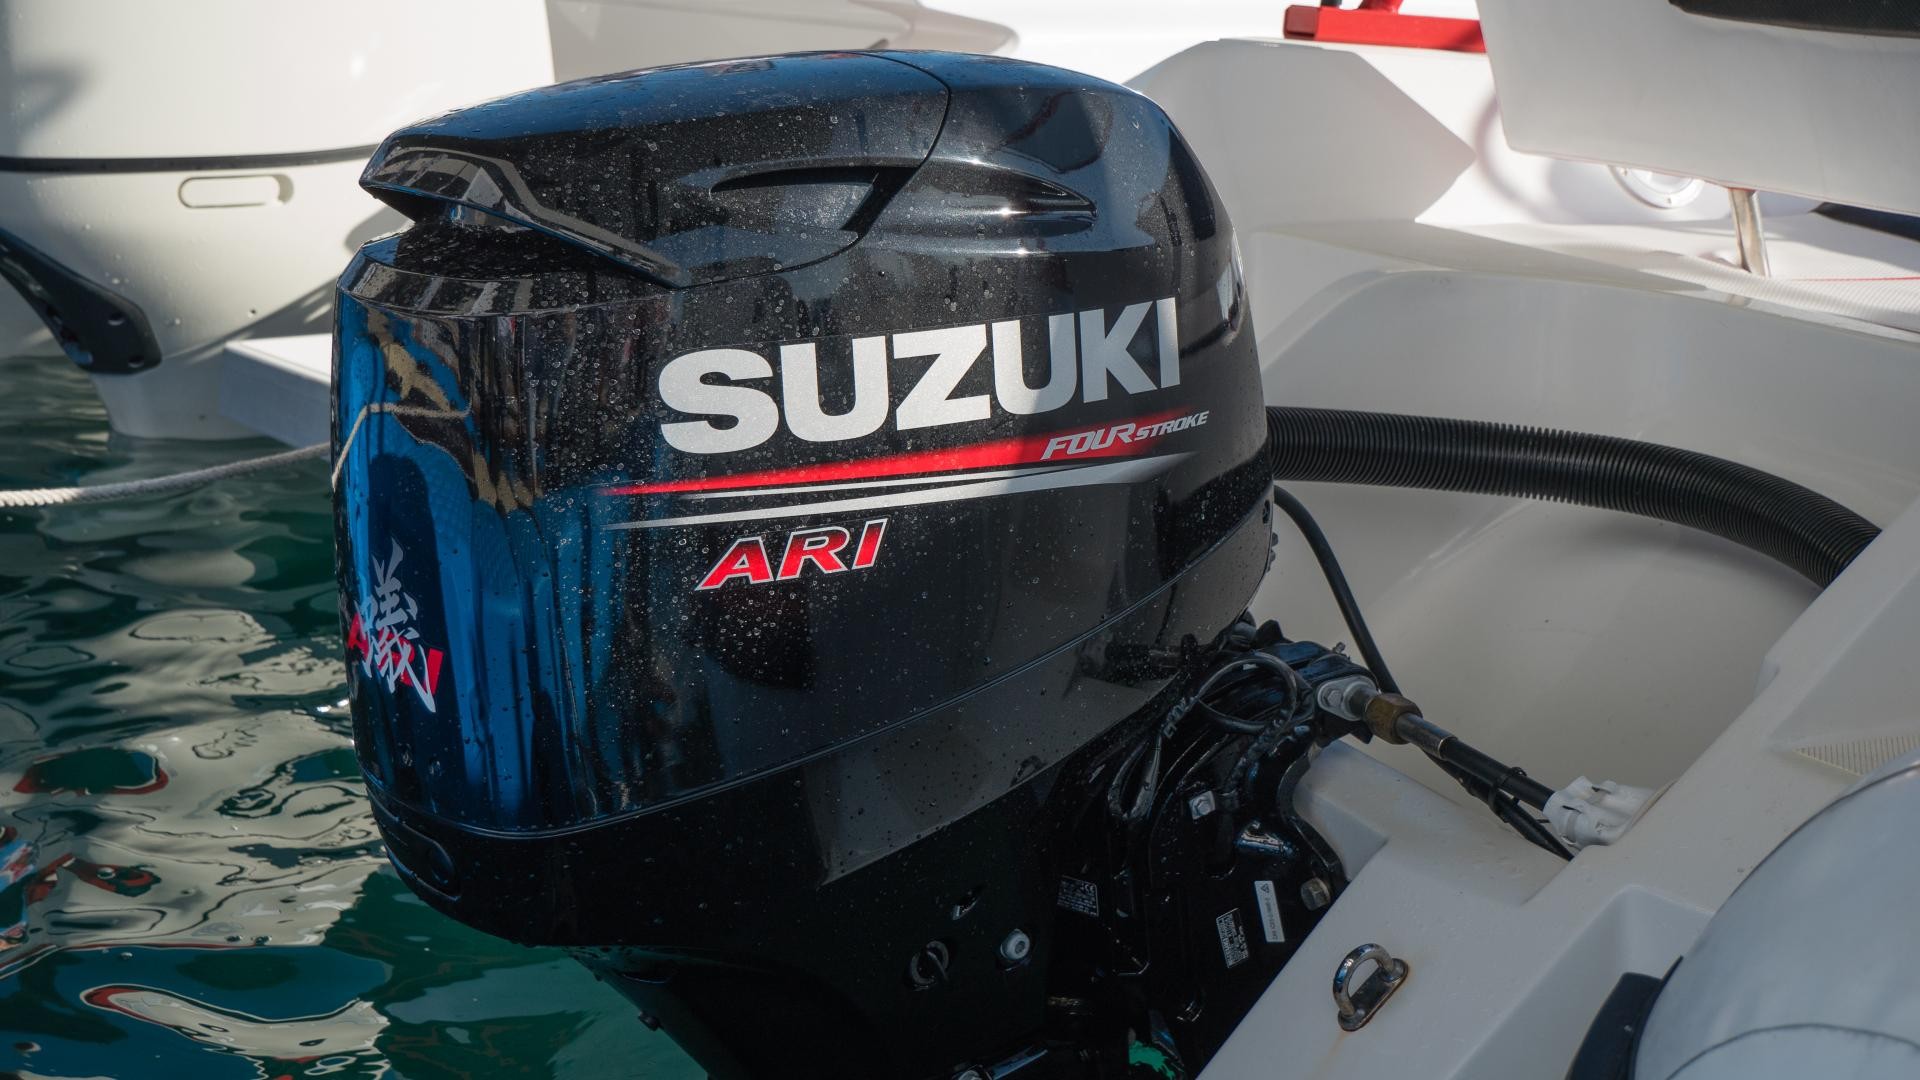 Il lockdown con Suzuki diventa un’opportunità: i fuoribordo DF40A e DF40A ARI, sono acquistabili online fino al 31 maggio